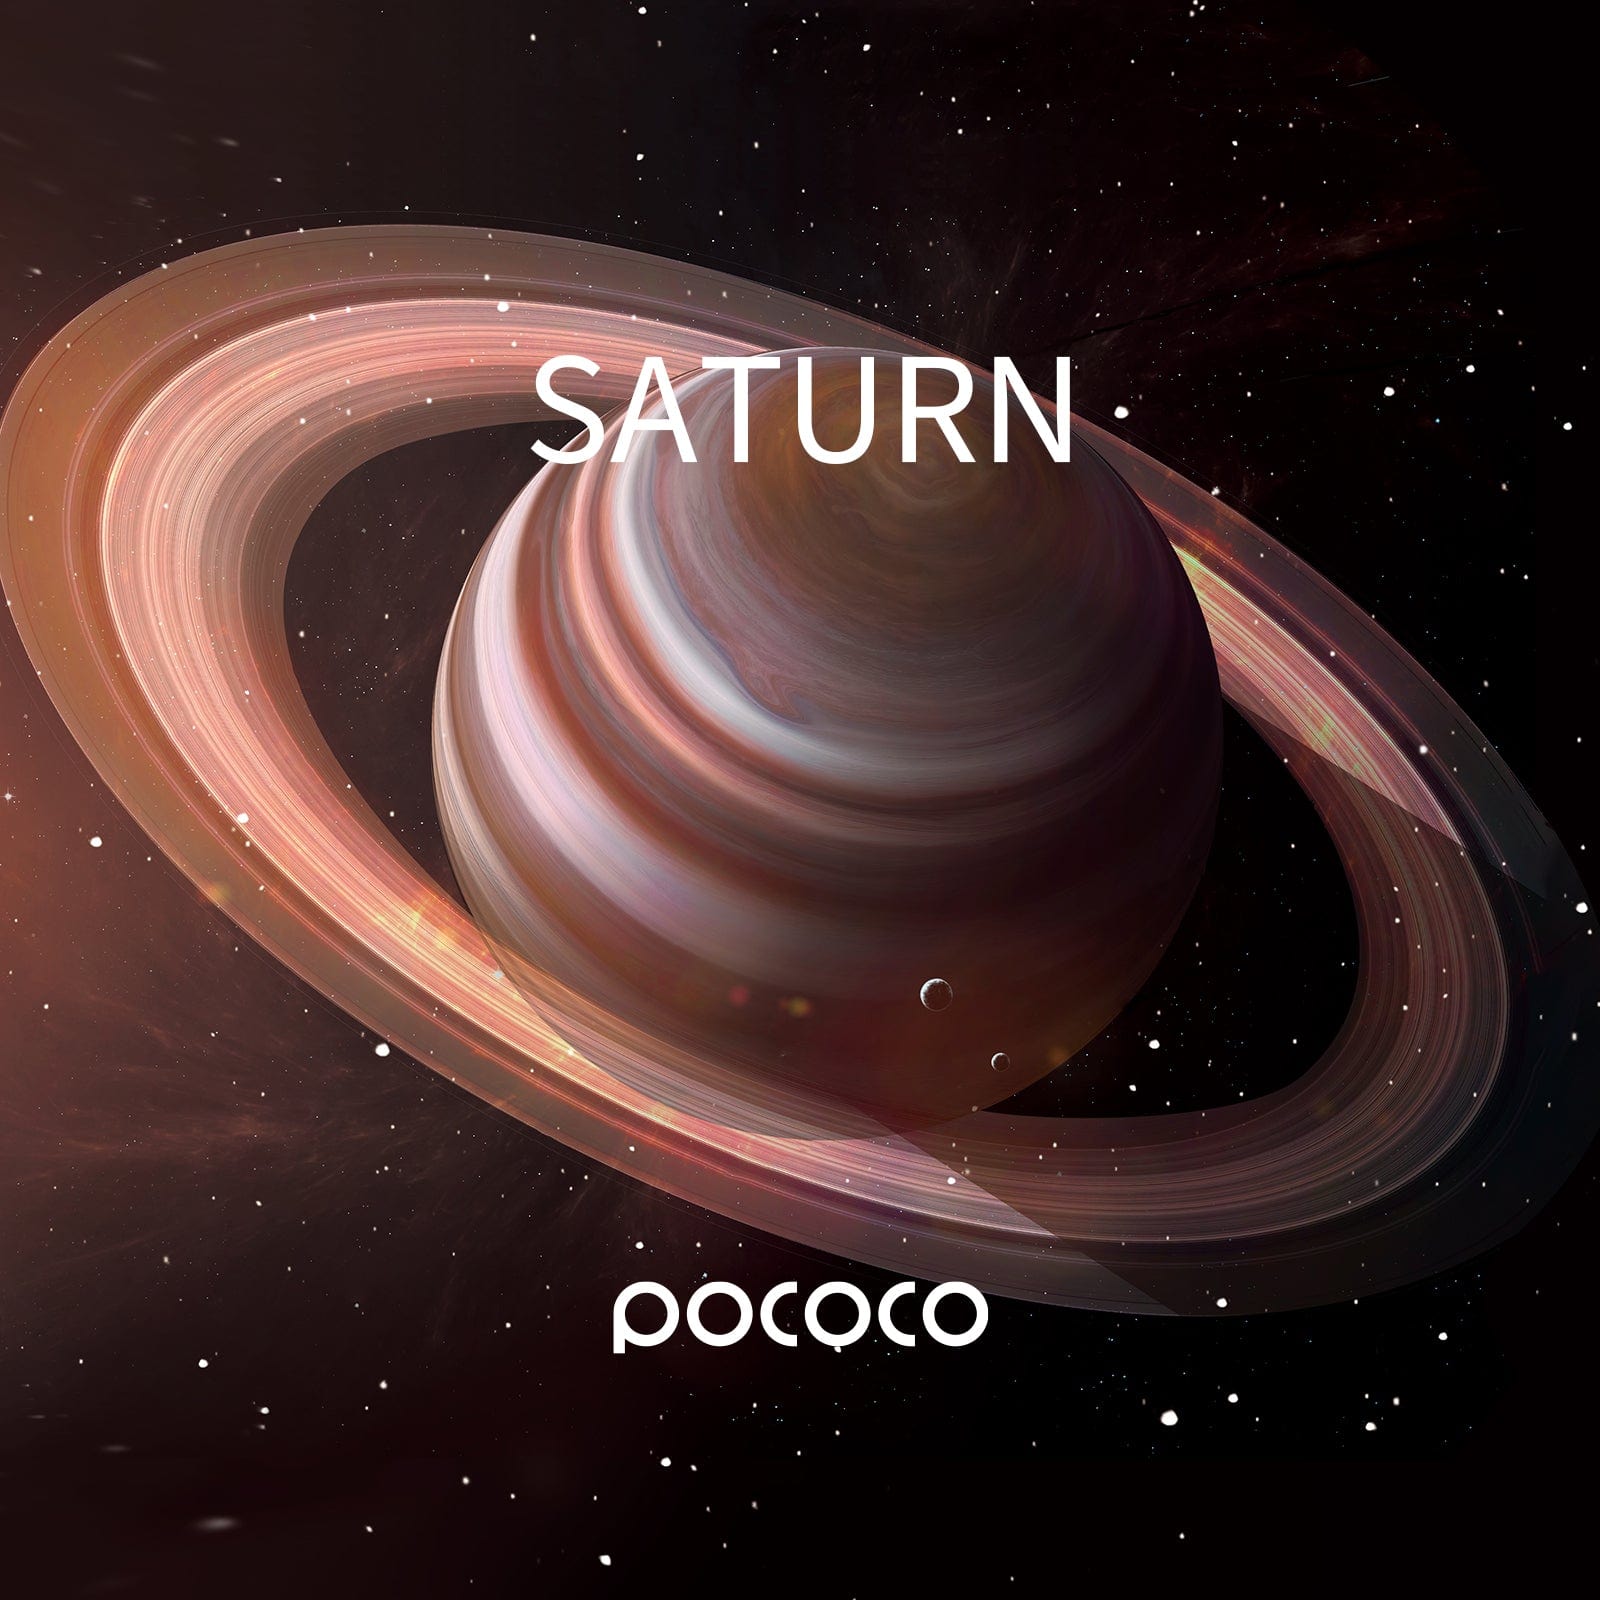 Saturn - Pococo Galaxy Projector Discs